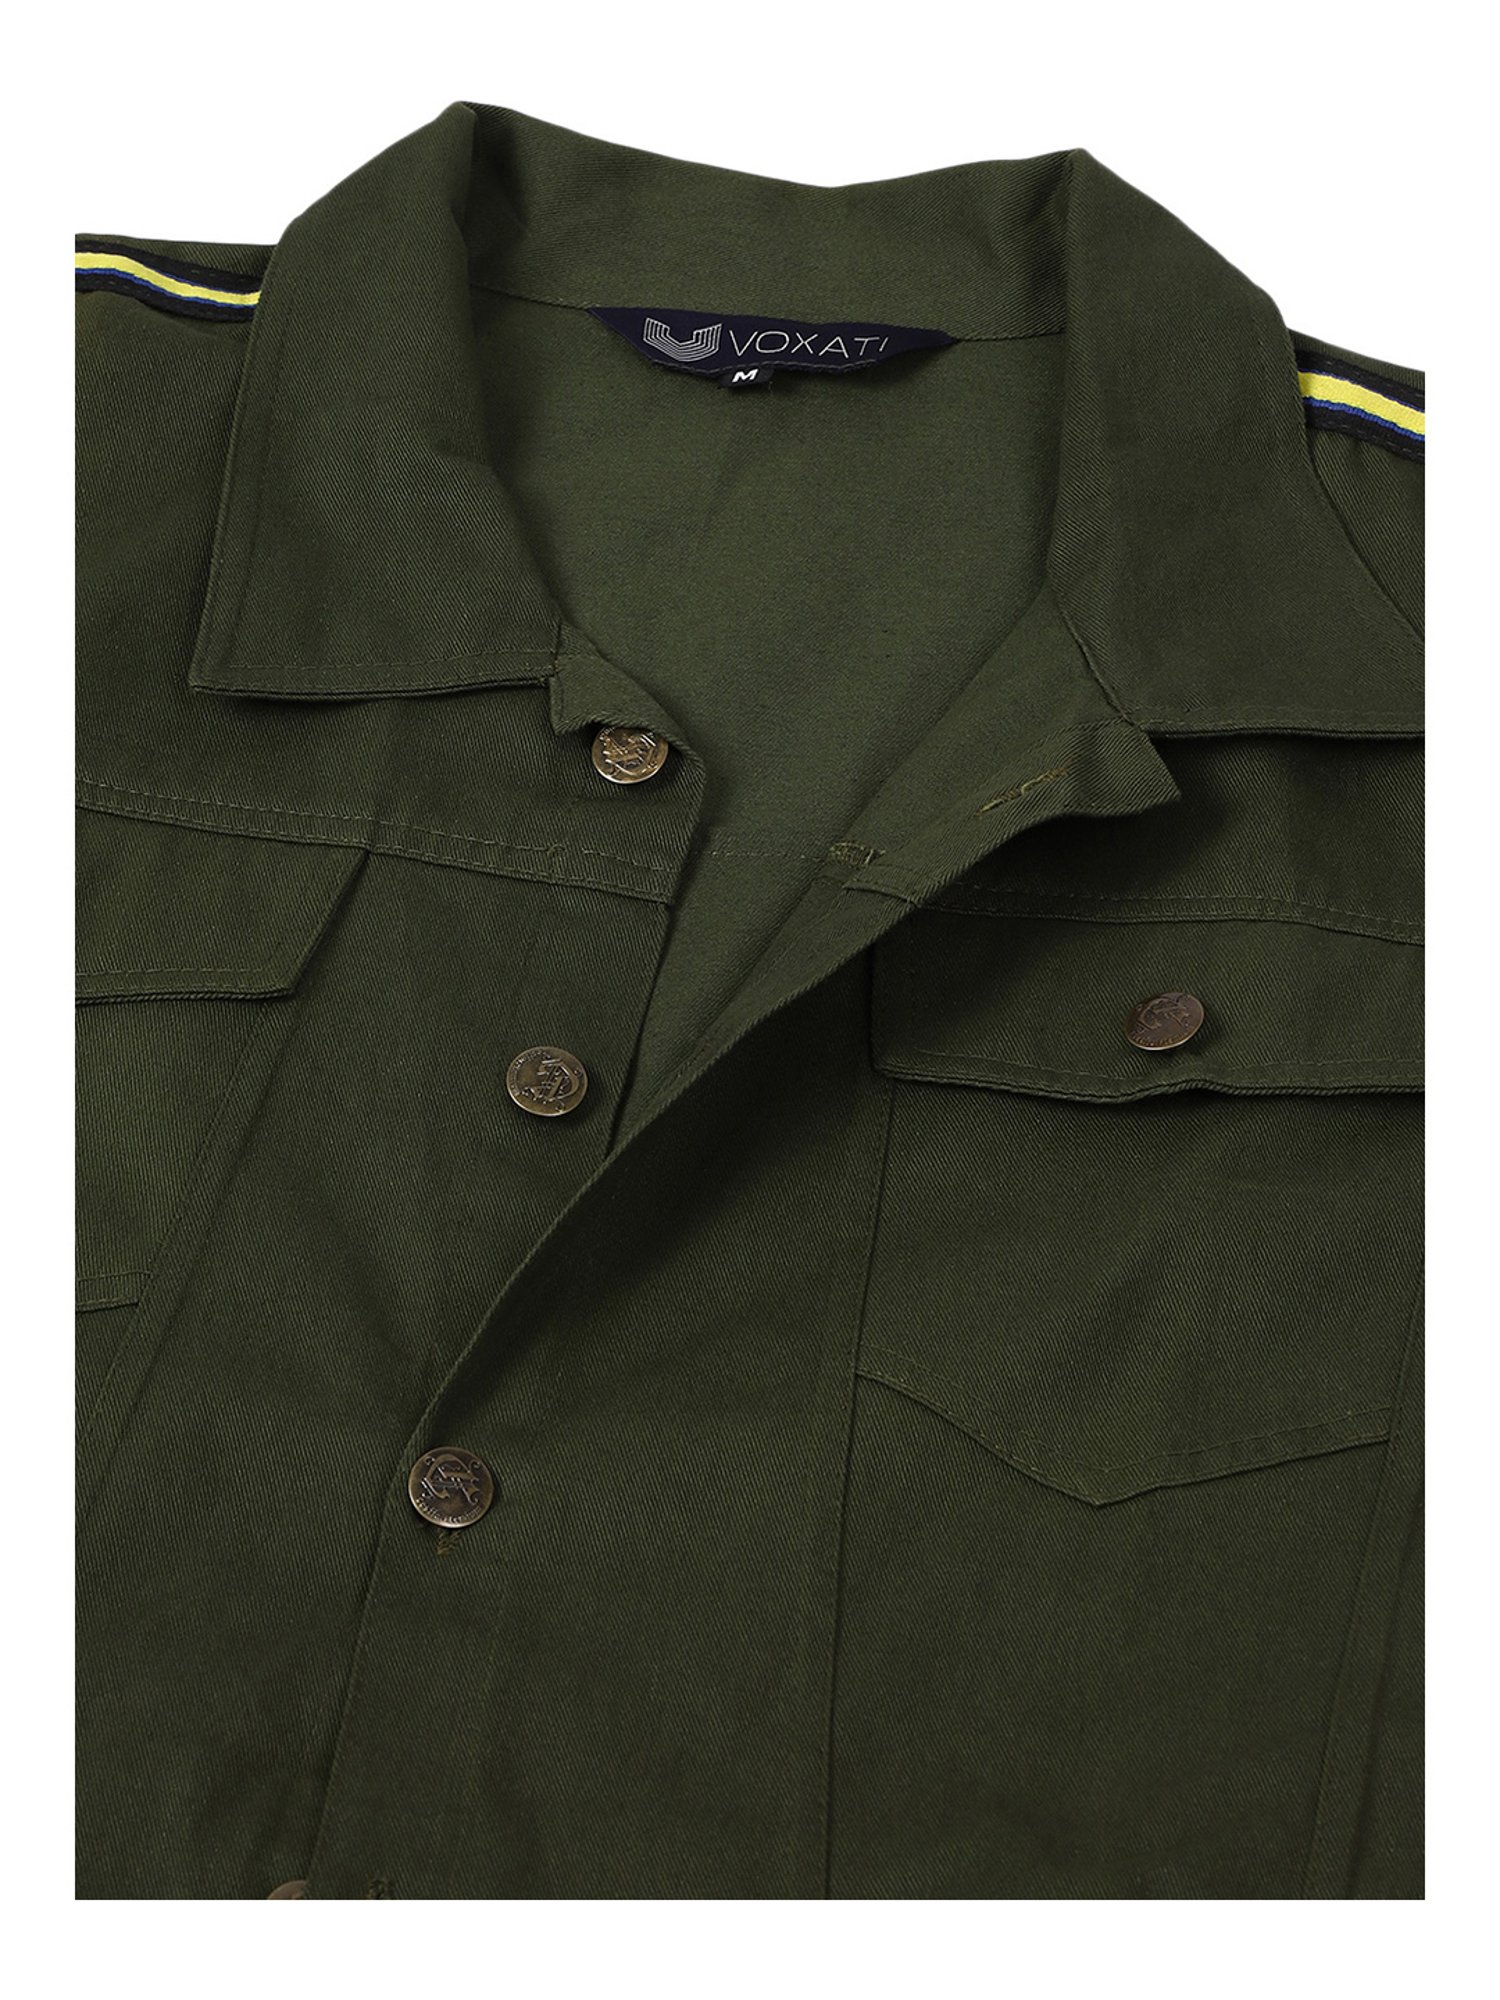 Buy VOXATI Green Full Sleeves Shirt Collar Denim Jacket for Men's Online @ Tata  CLiQ